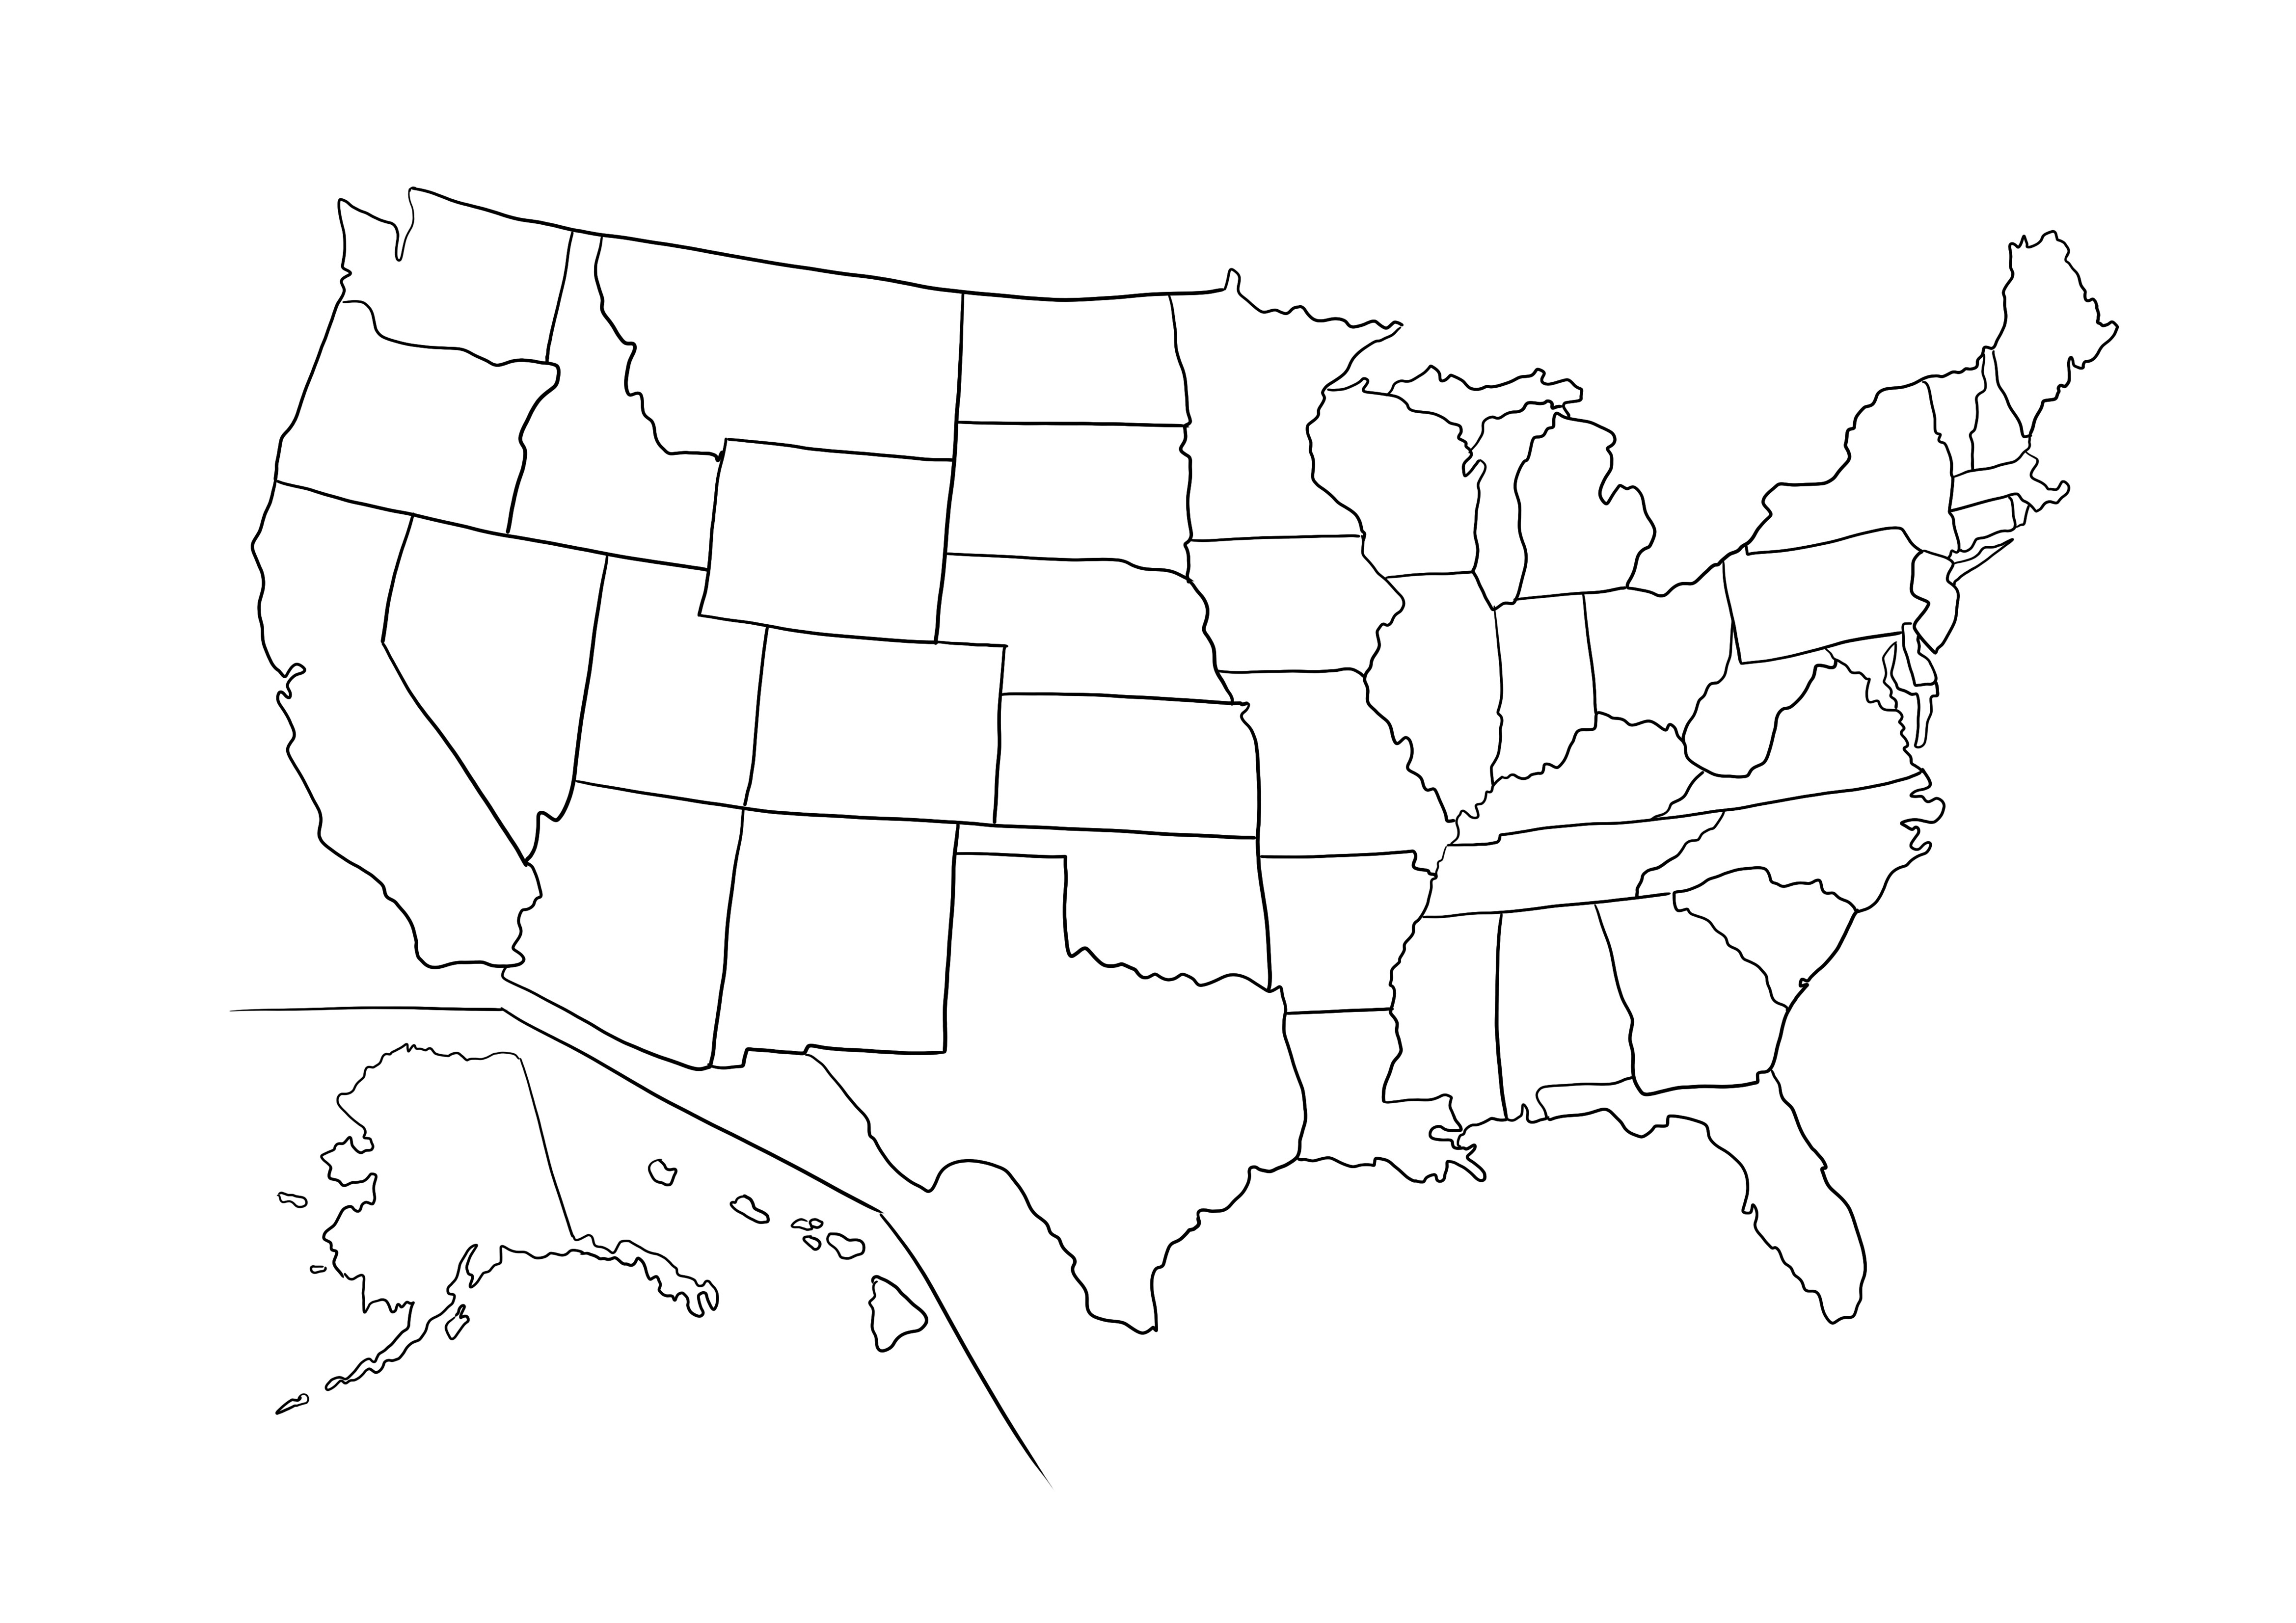 Peta garis besar AS untuk dicetak secara gratis dan berwarna